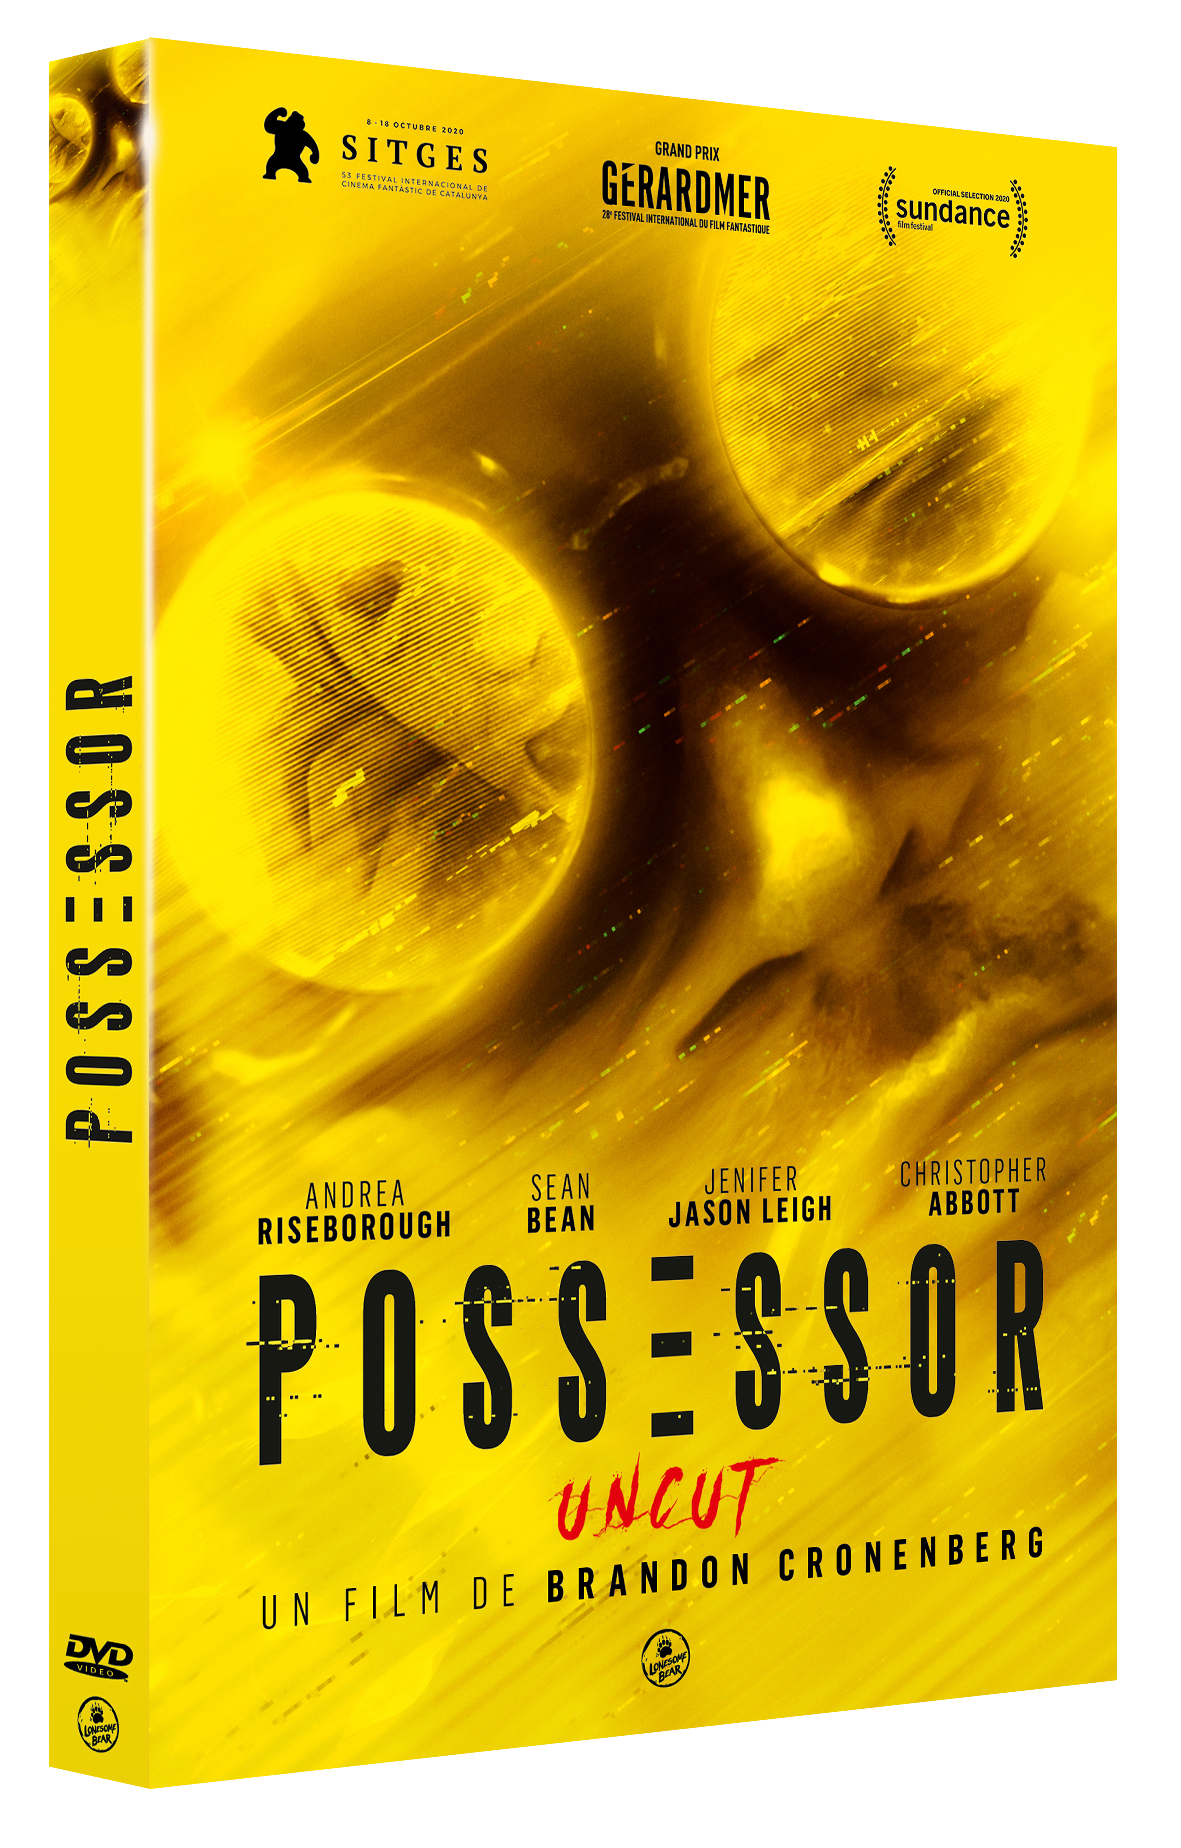 DVD "Possessor"